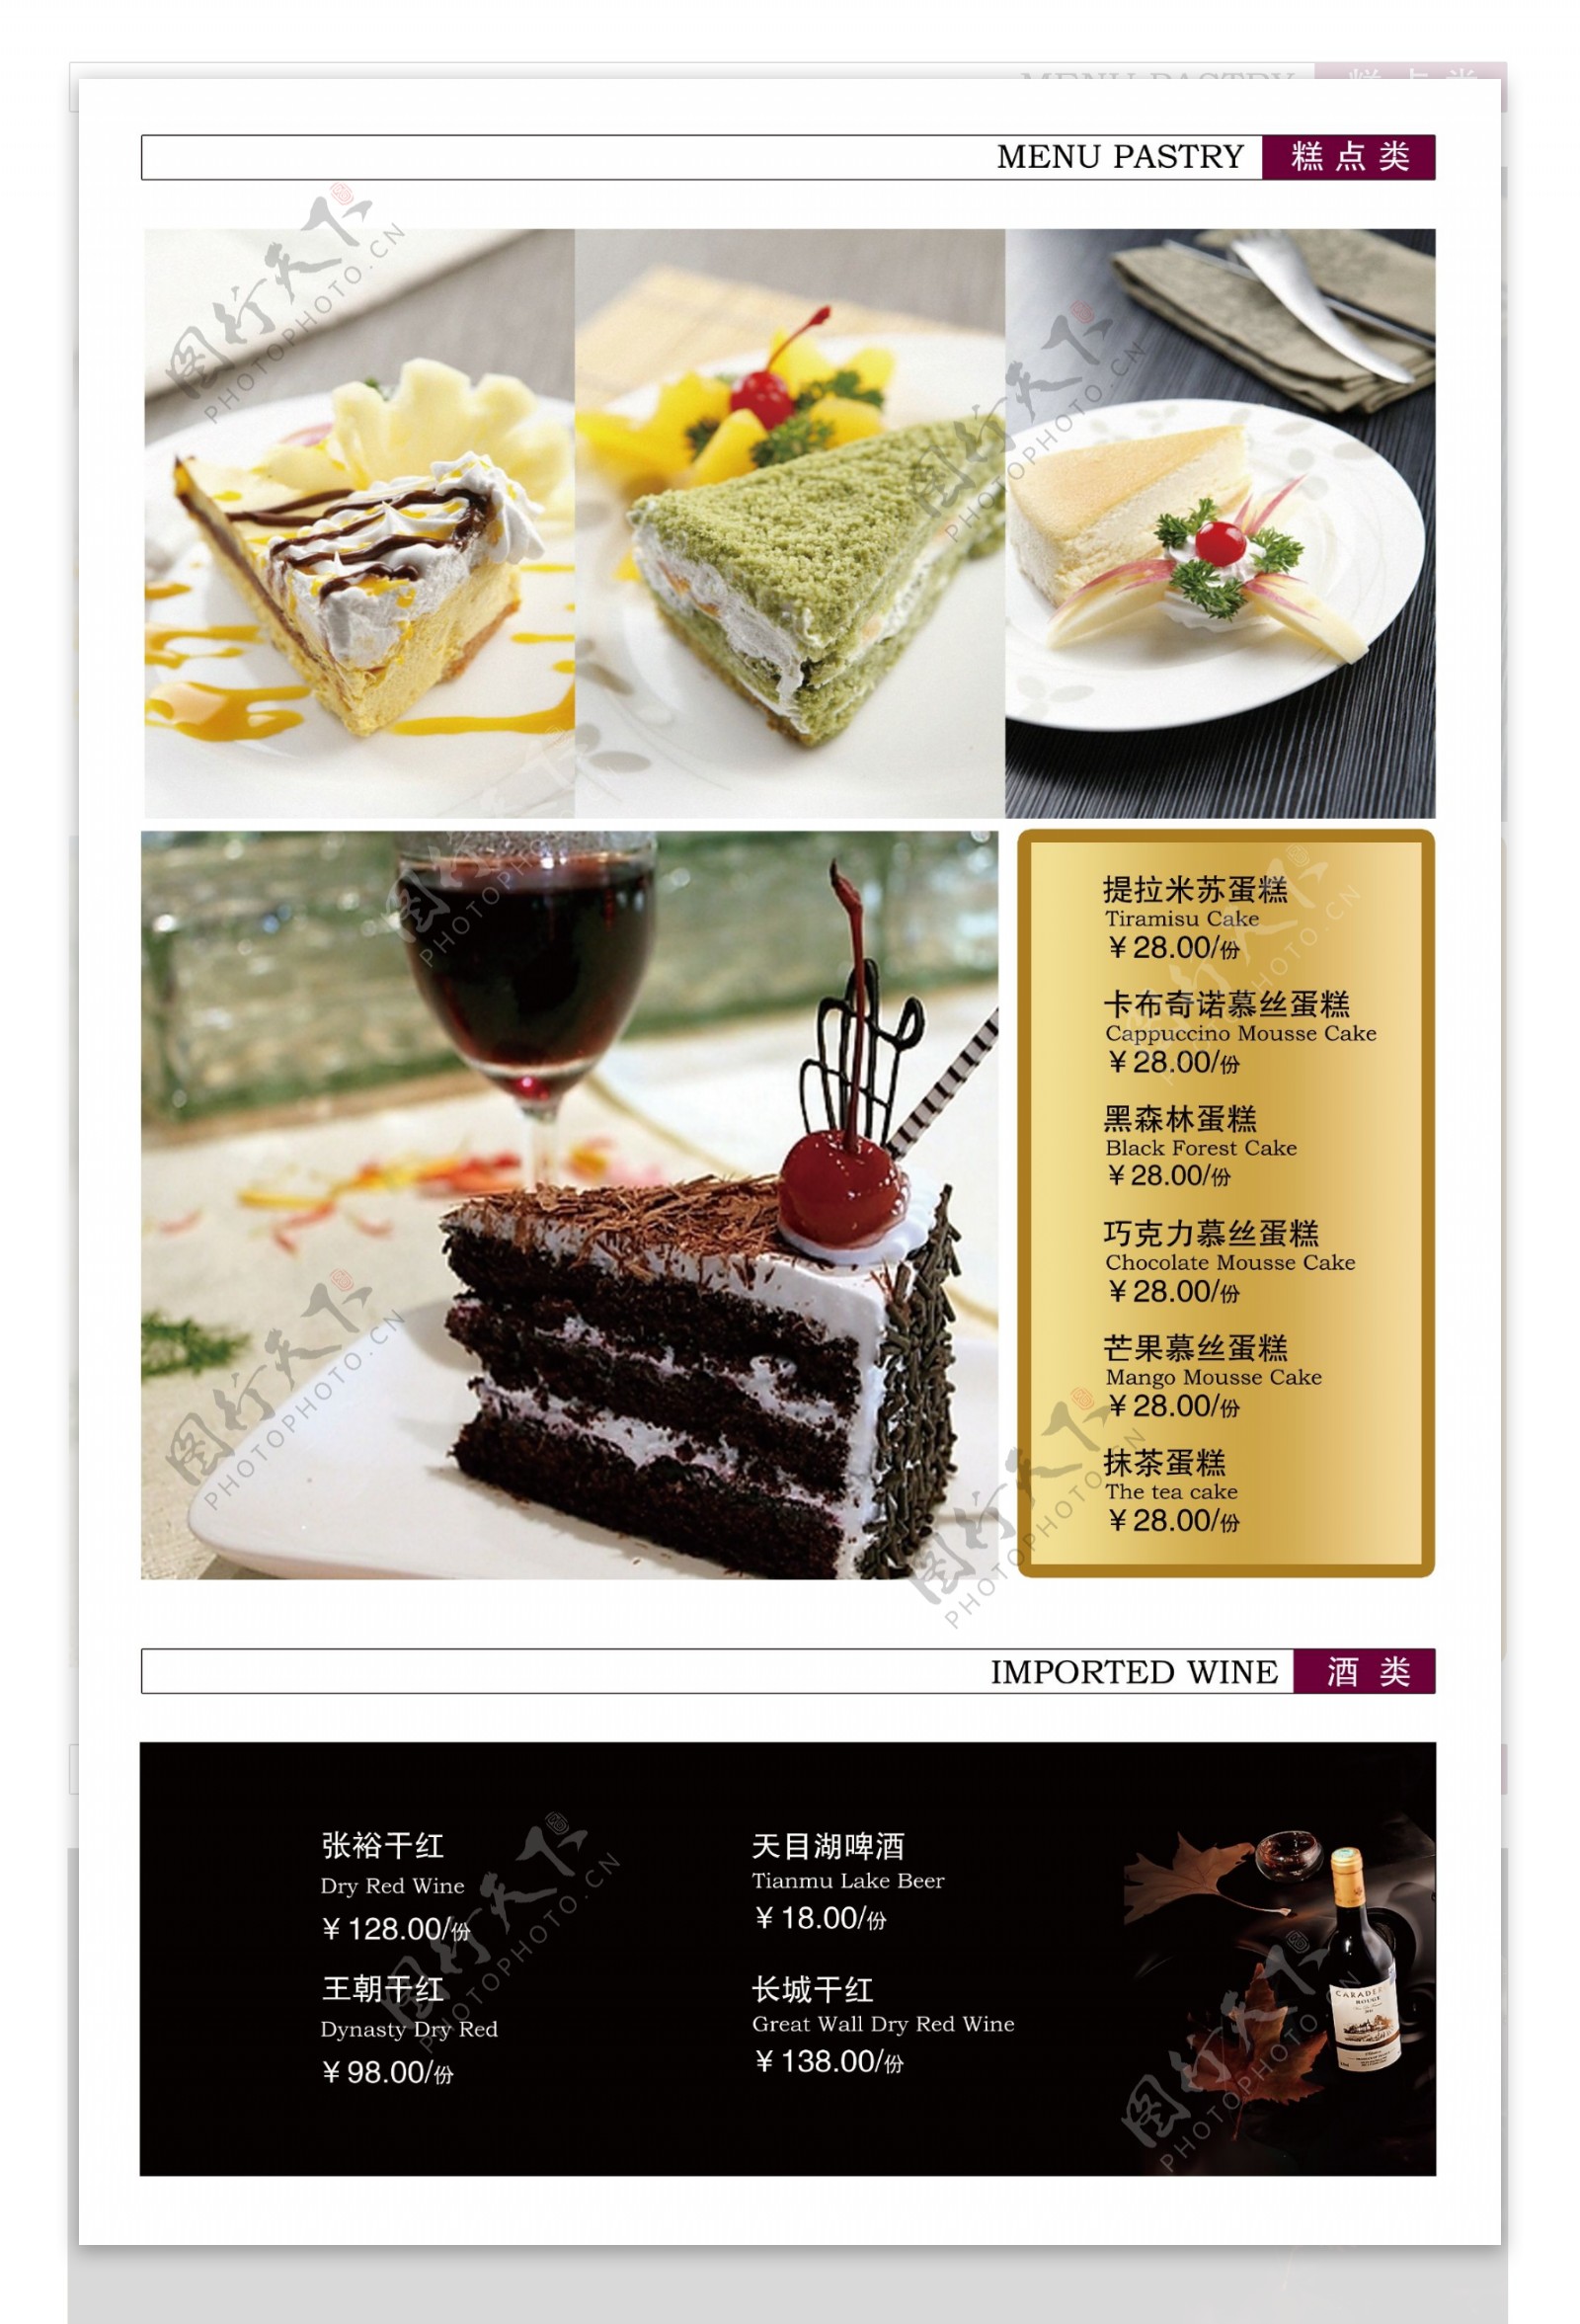 甜品菜单素材图片下载-素材编号03664007-素材天下图库